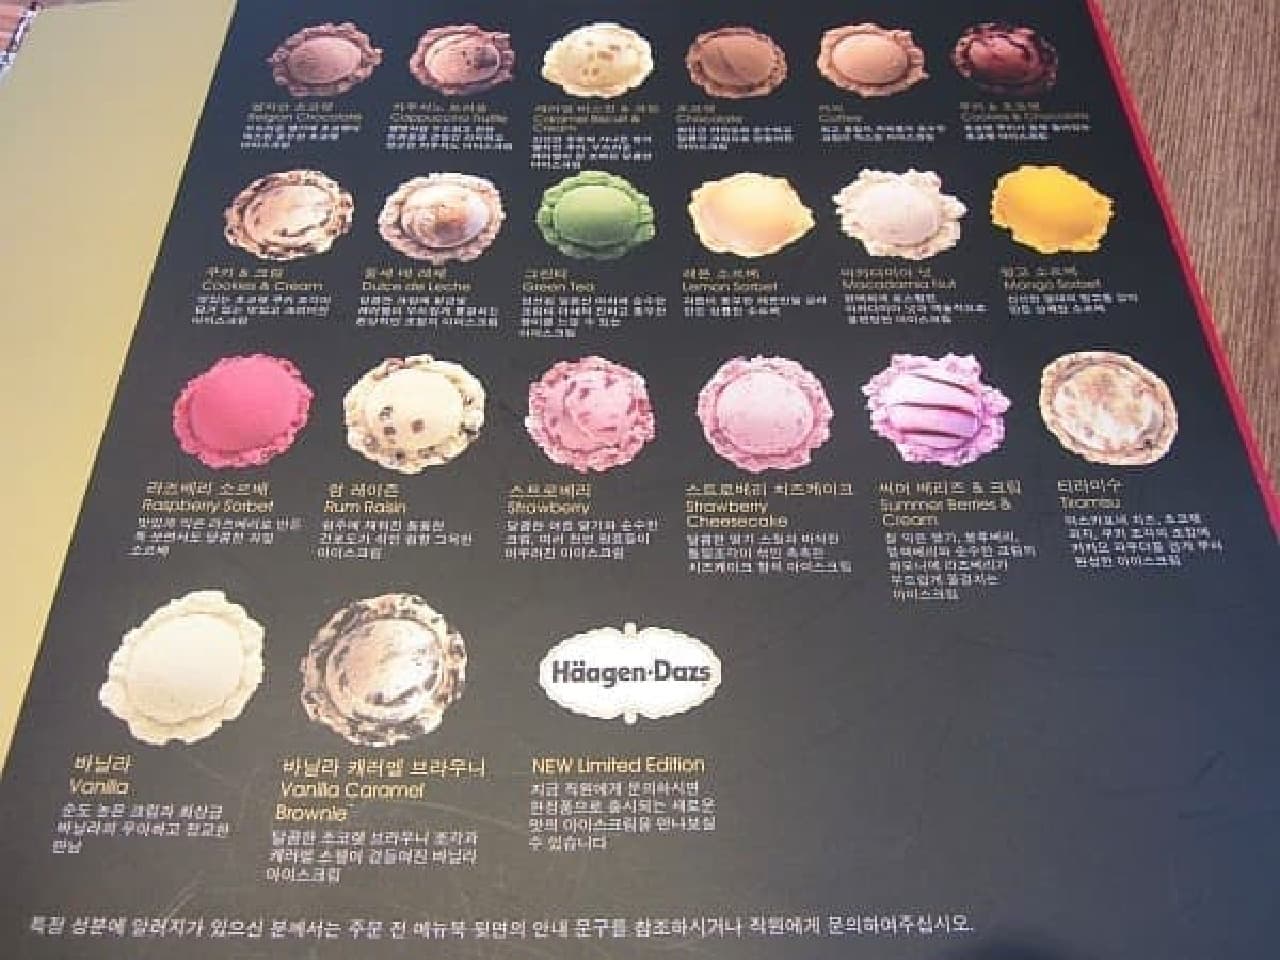 20 flavors of ice cream